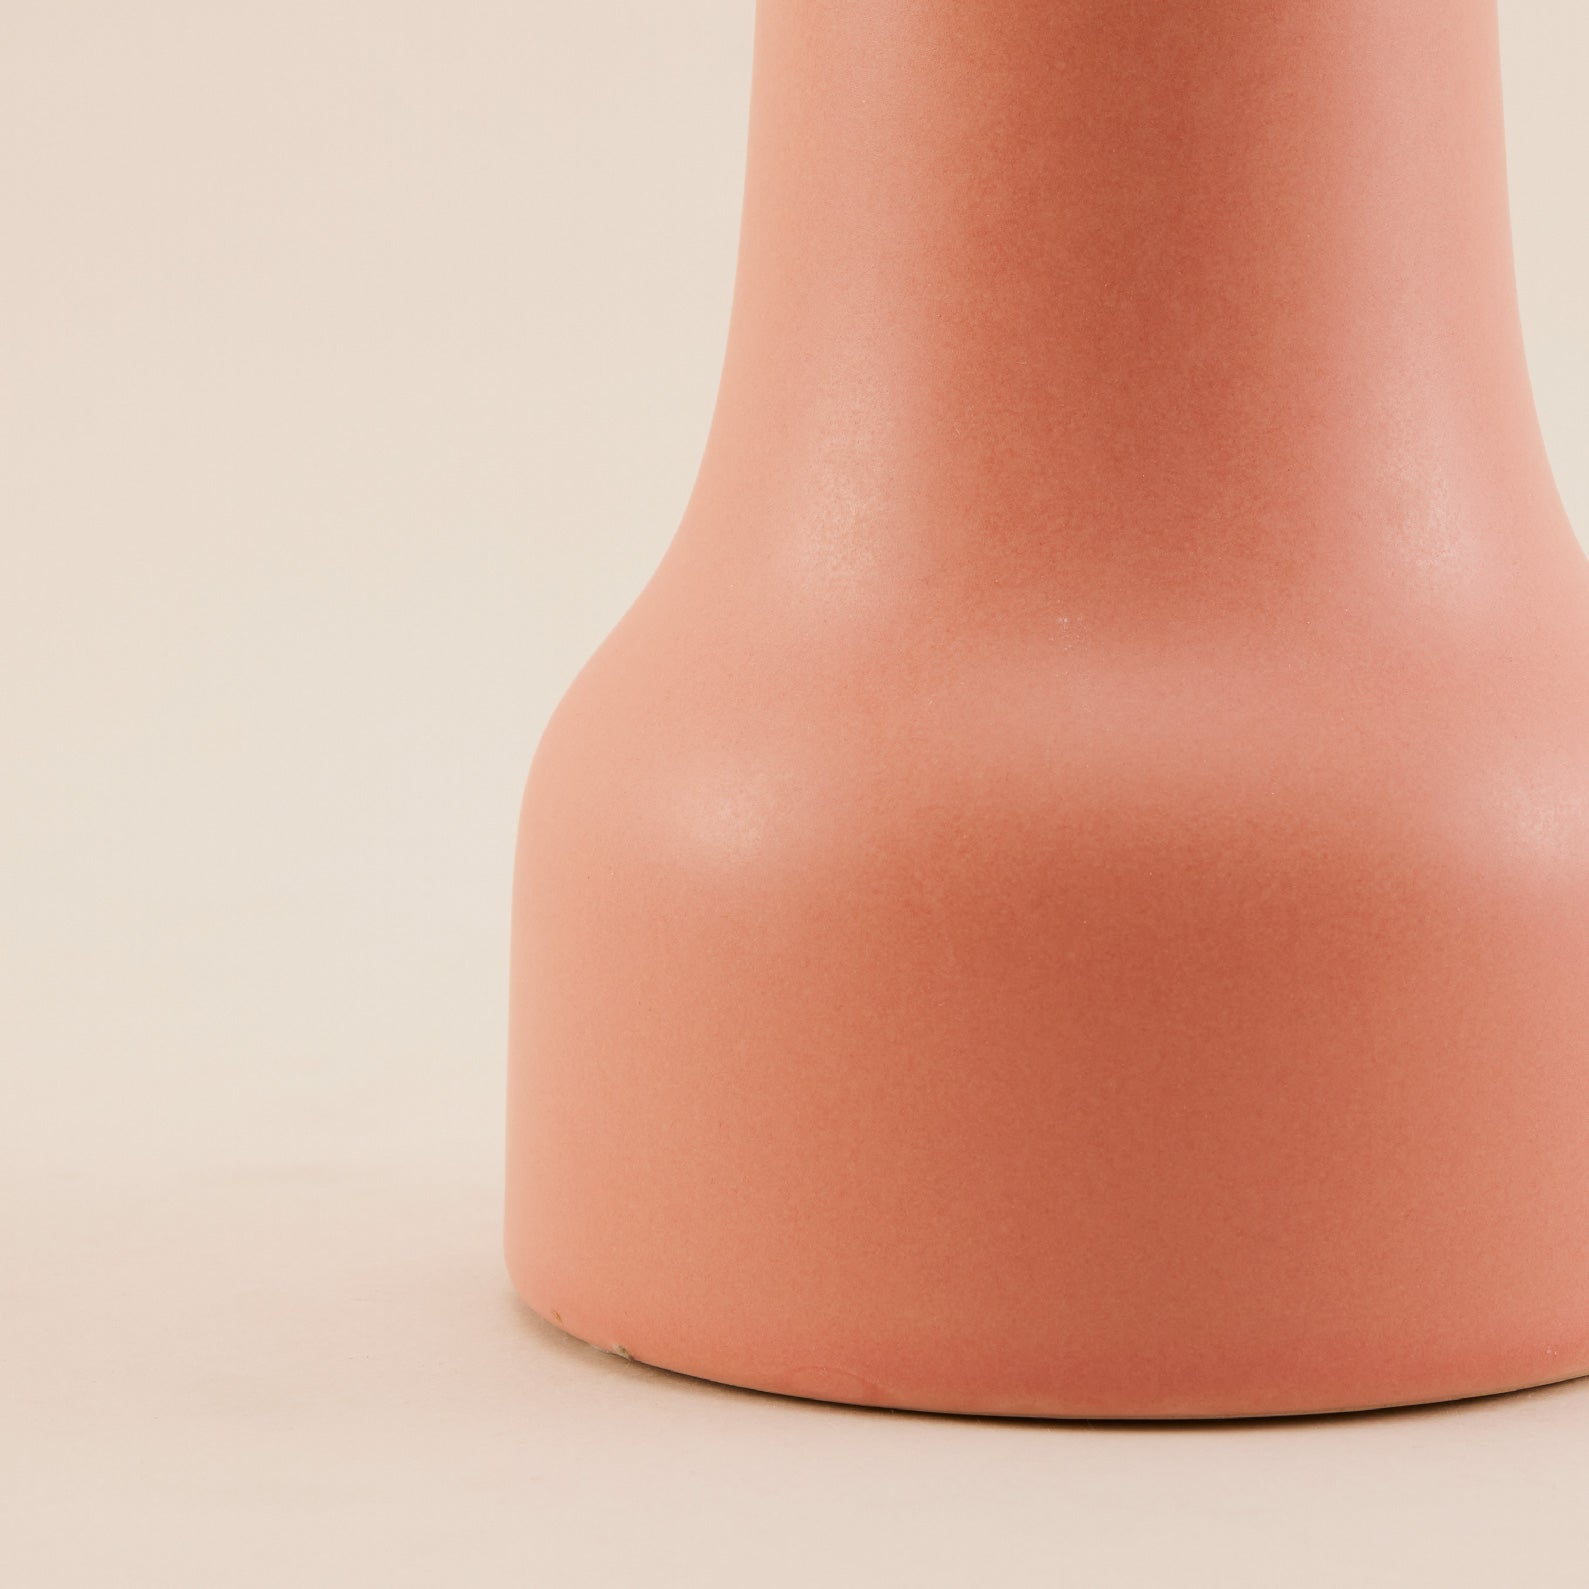 Pink Porcelain Vase | แจกัน เซรามิก